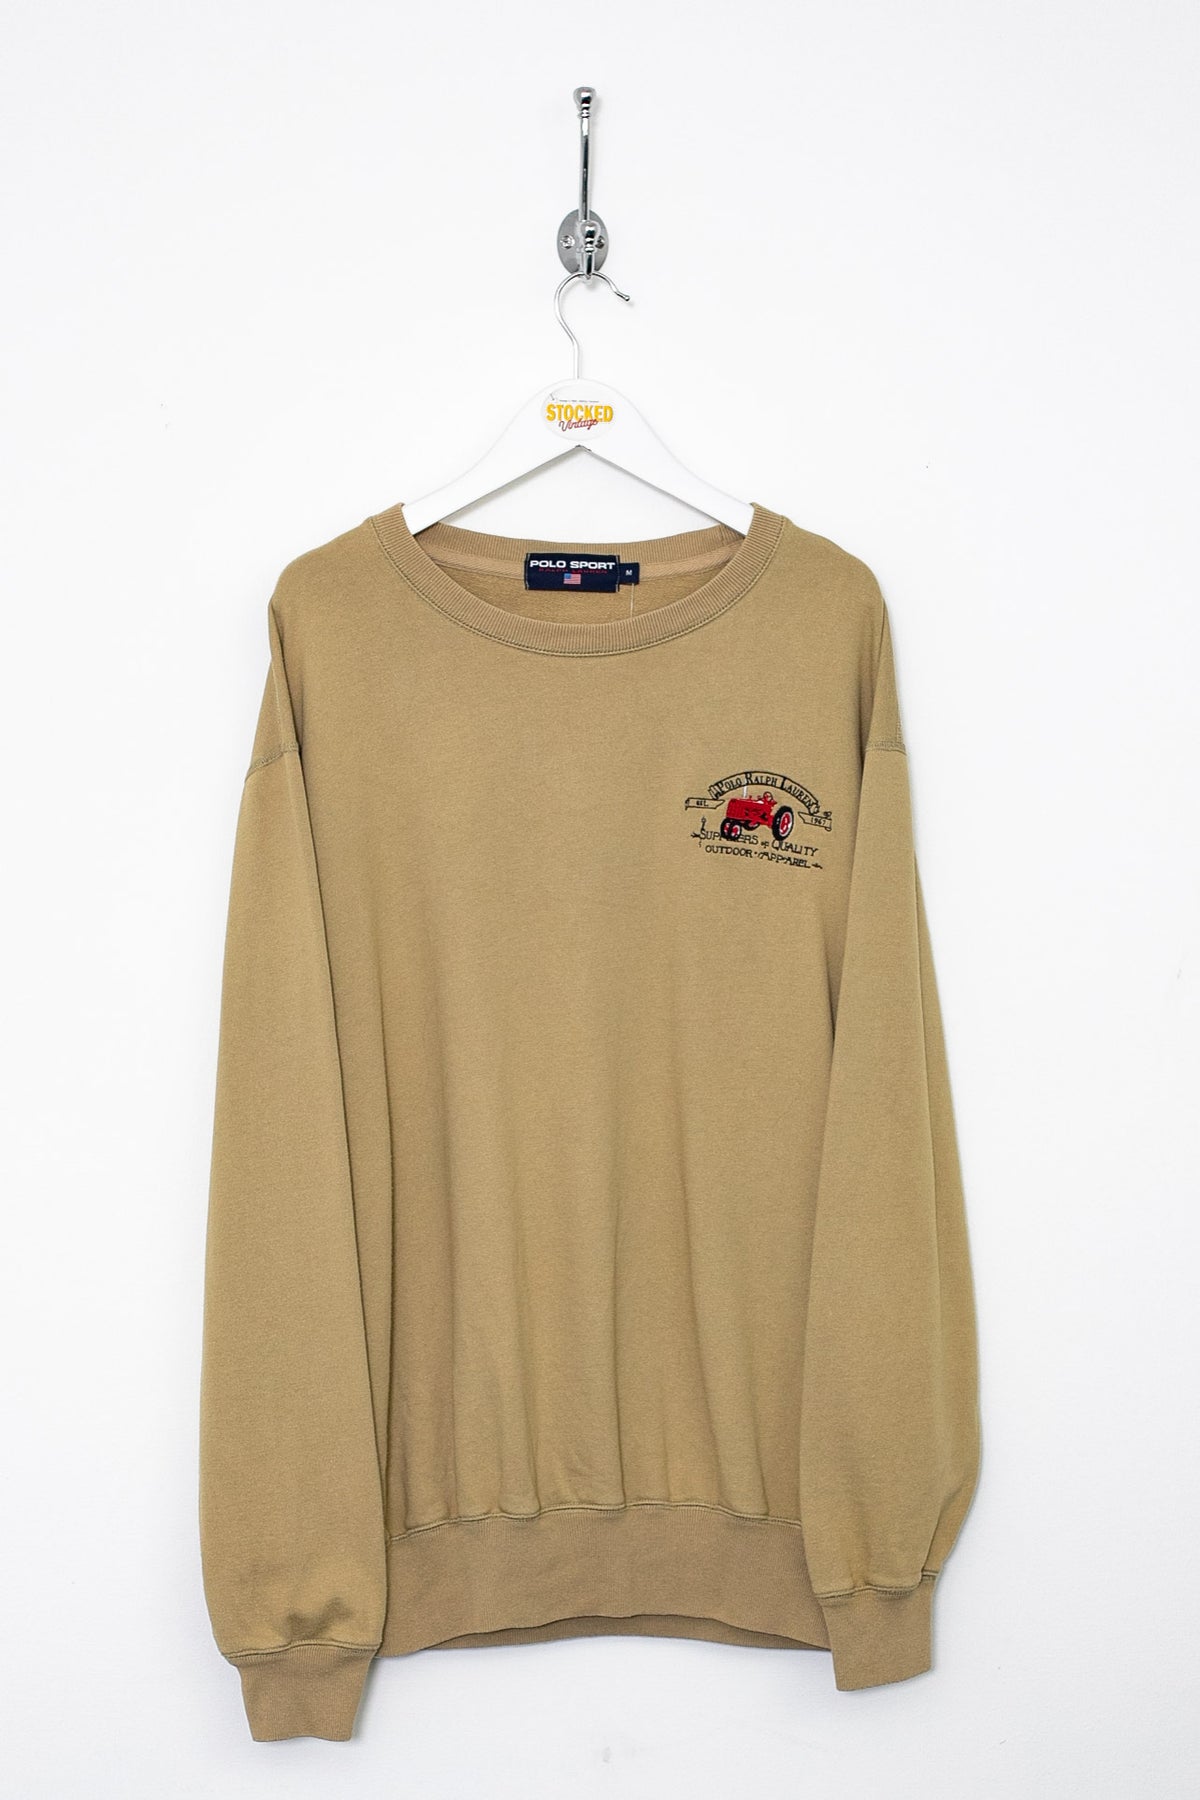 00s Ralph Lauren Polo Sport Sweatshirt (L)